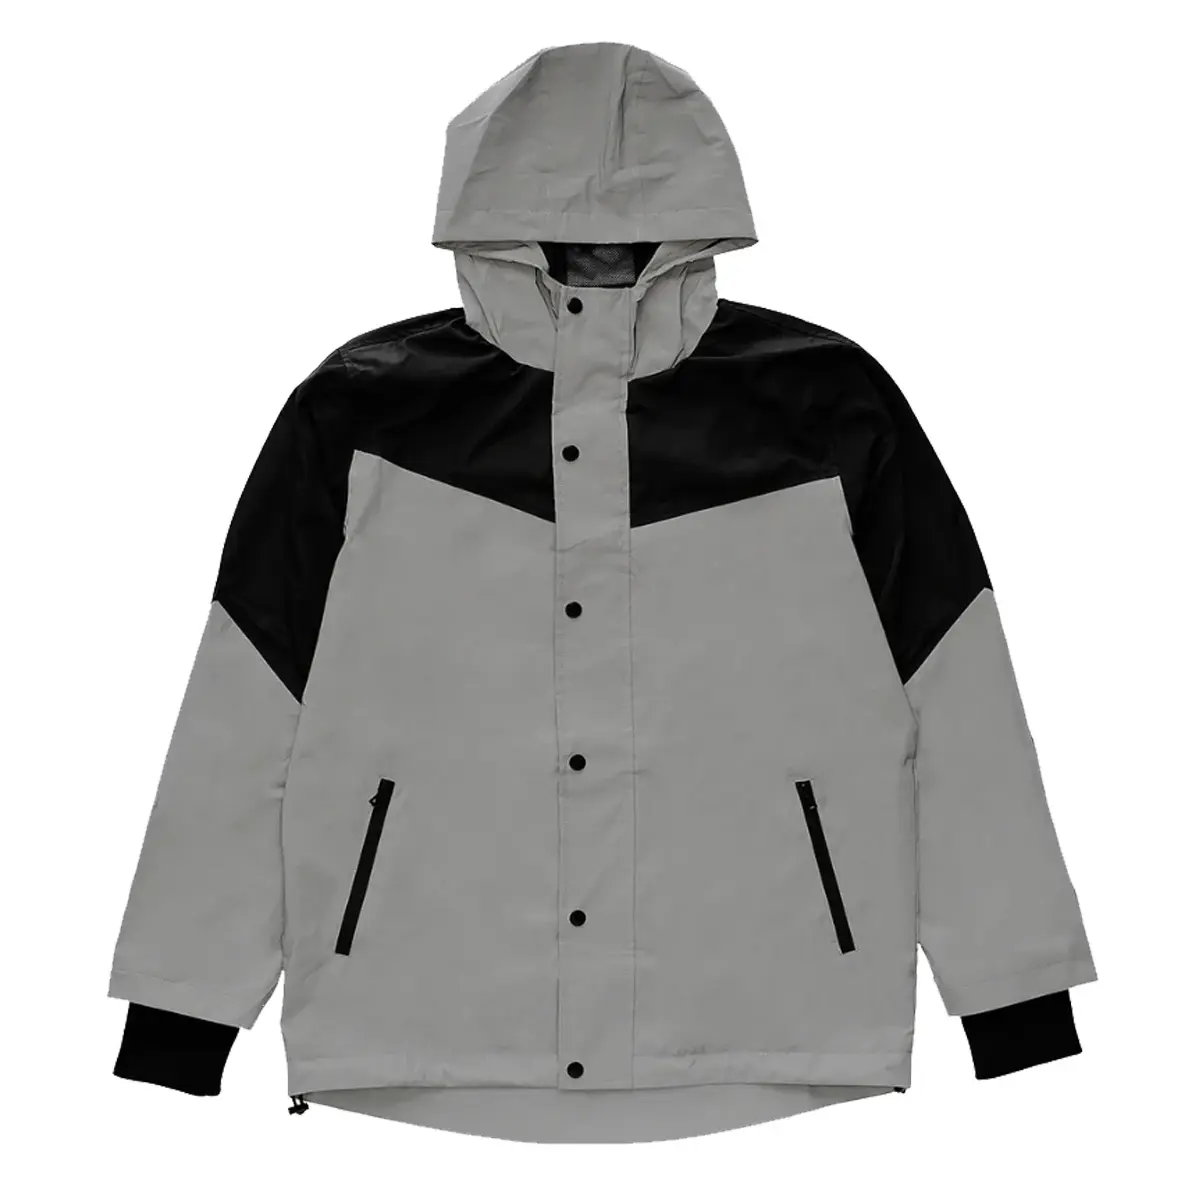 Grey 3M Coat Reflective Jacket With Hood Windbreaker Custom Men Waterproof Mesh Lined Zip Pocket Patchwork